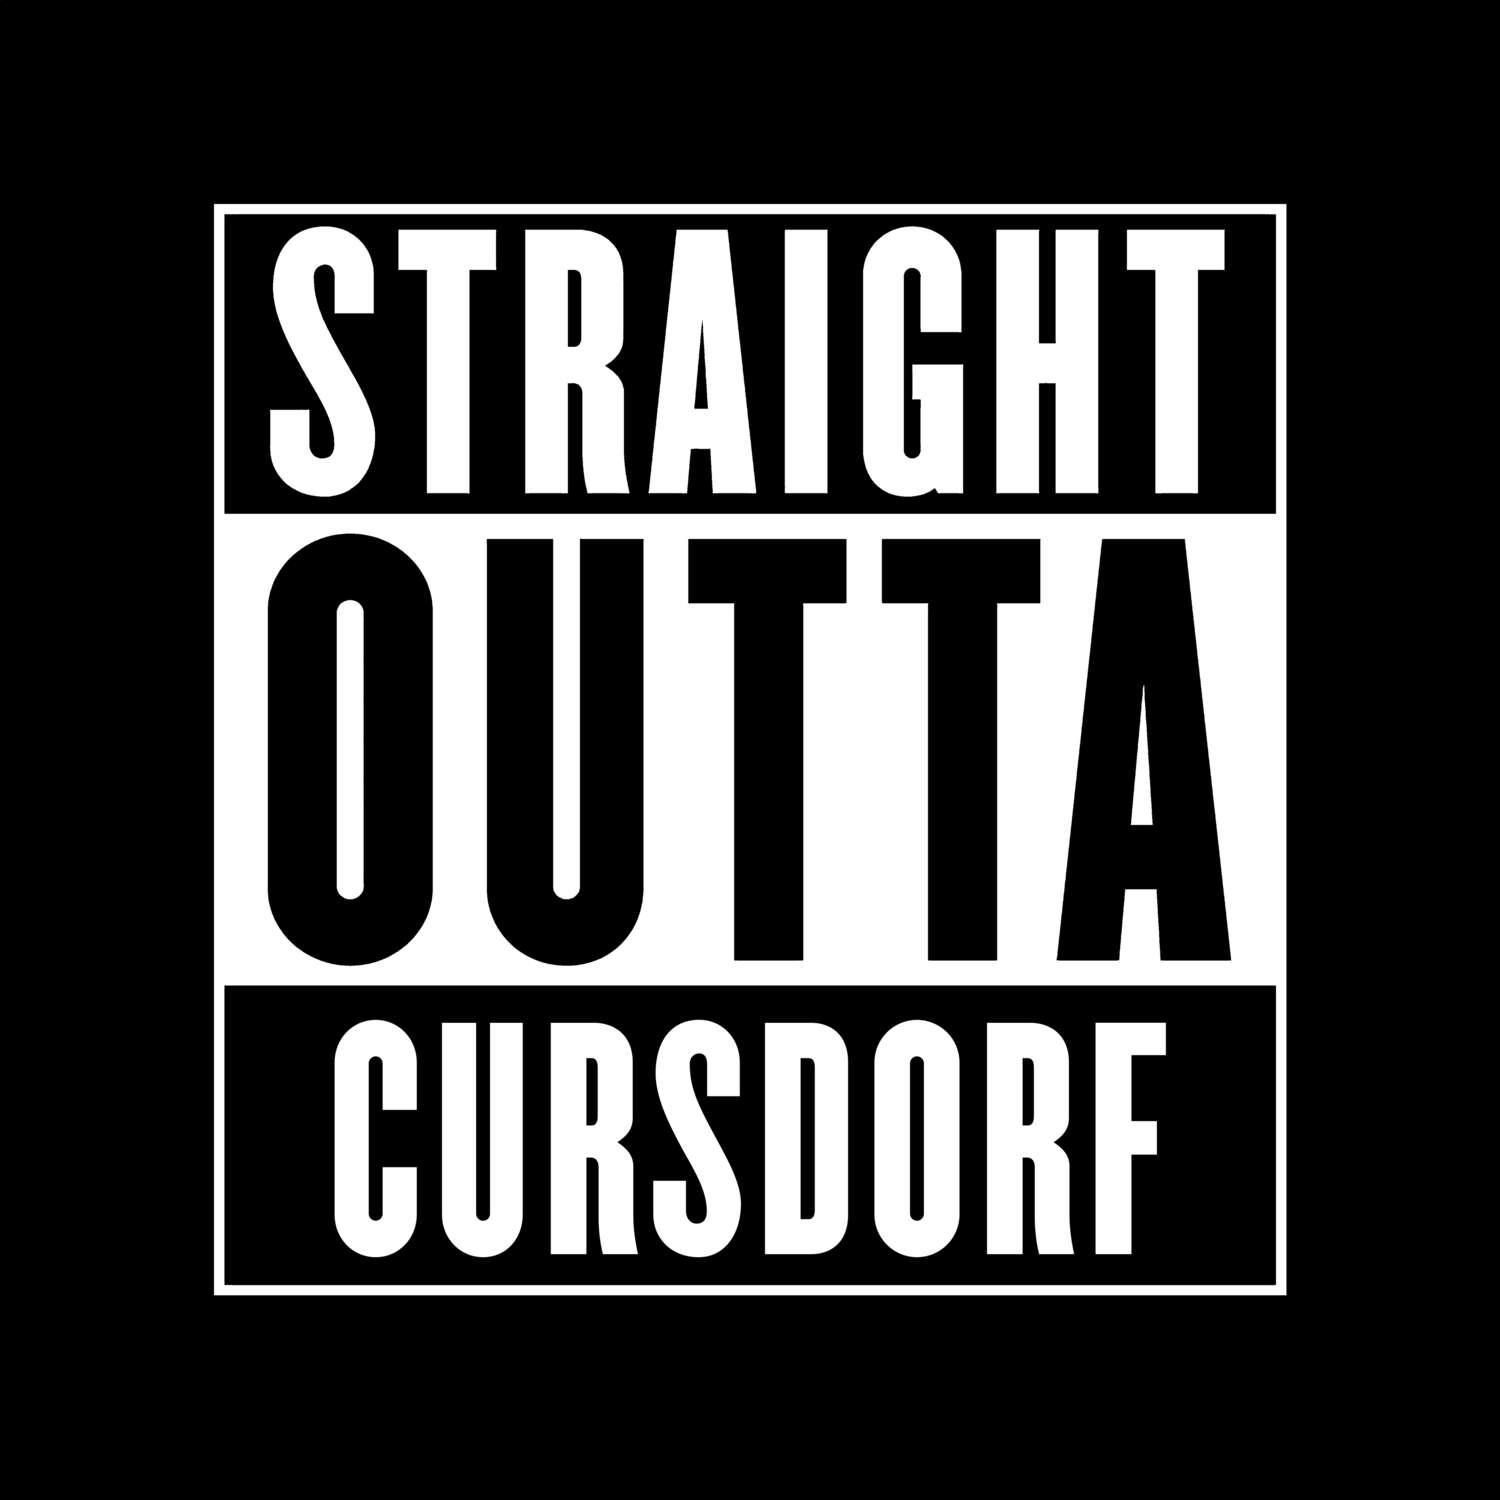 Cursdorf T-Shirt »Straight Outta«